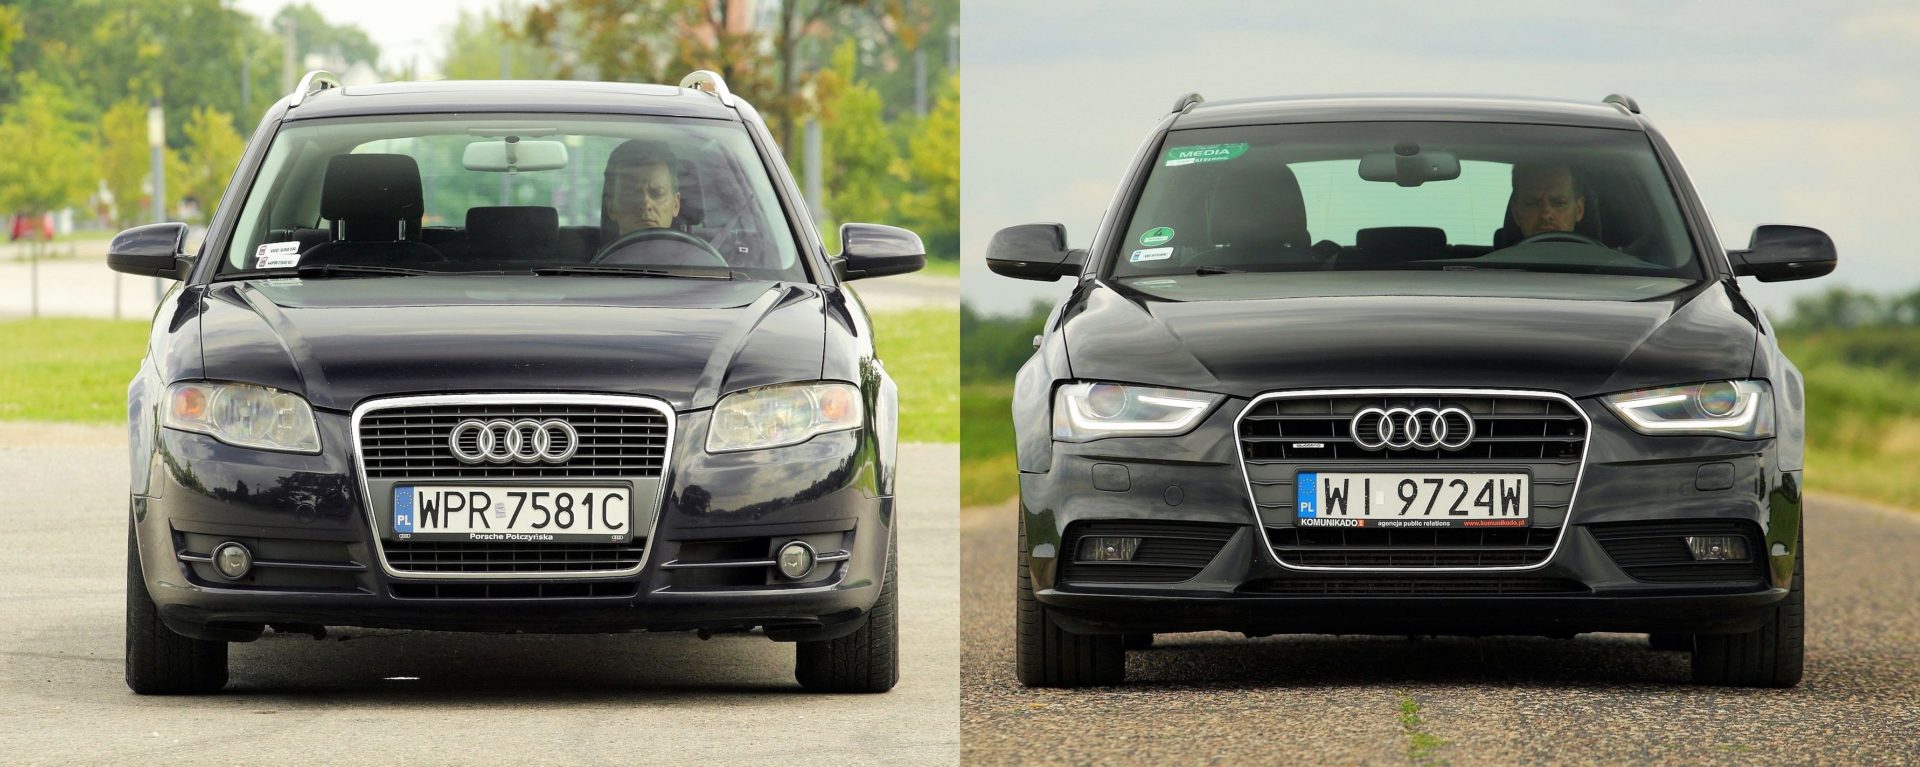 Używane Audi A4 B7 i Audi A4 B8 którą generację wybrać?